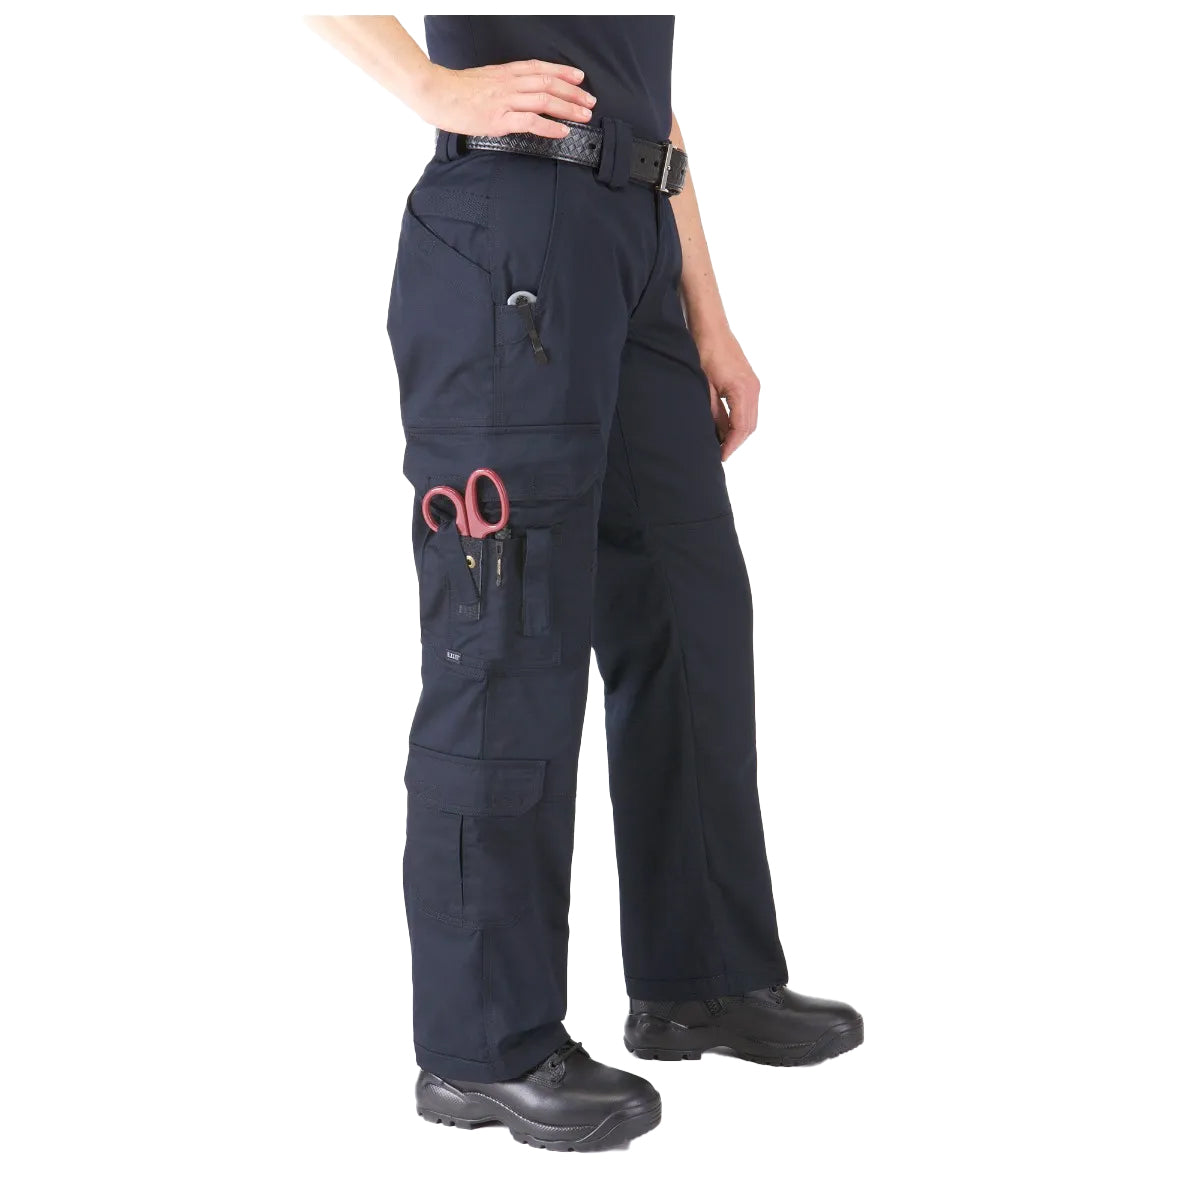 5.11 Tactical Women's EMS Pants-Tac Essentials